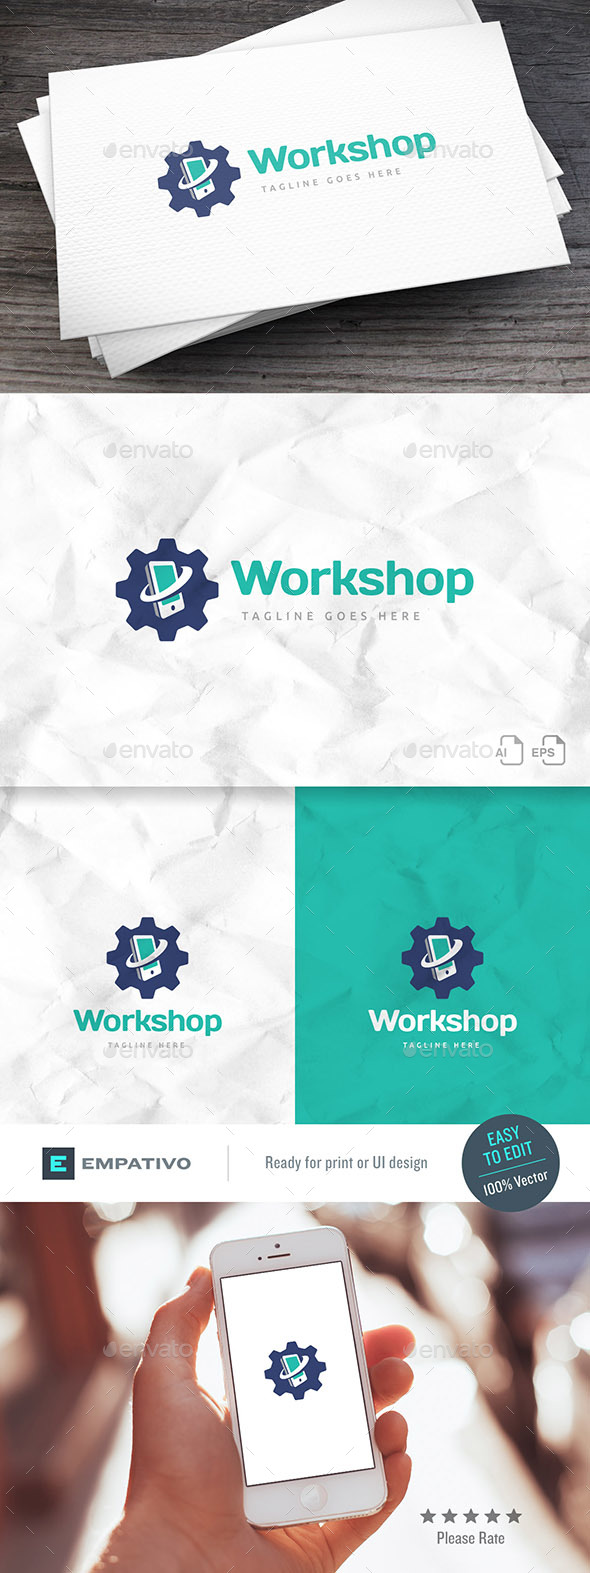 Mobile Workshop Logo Template